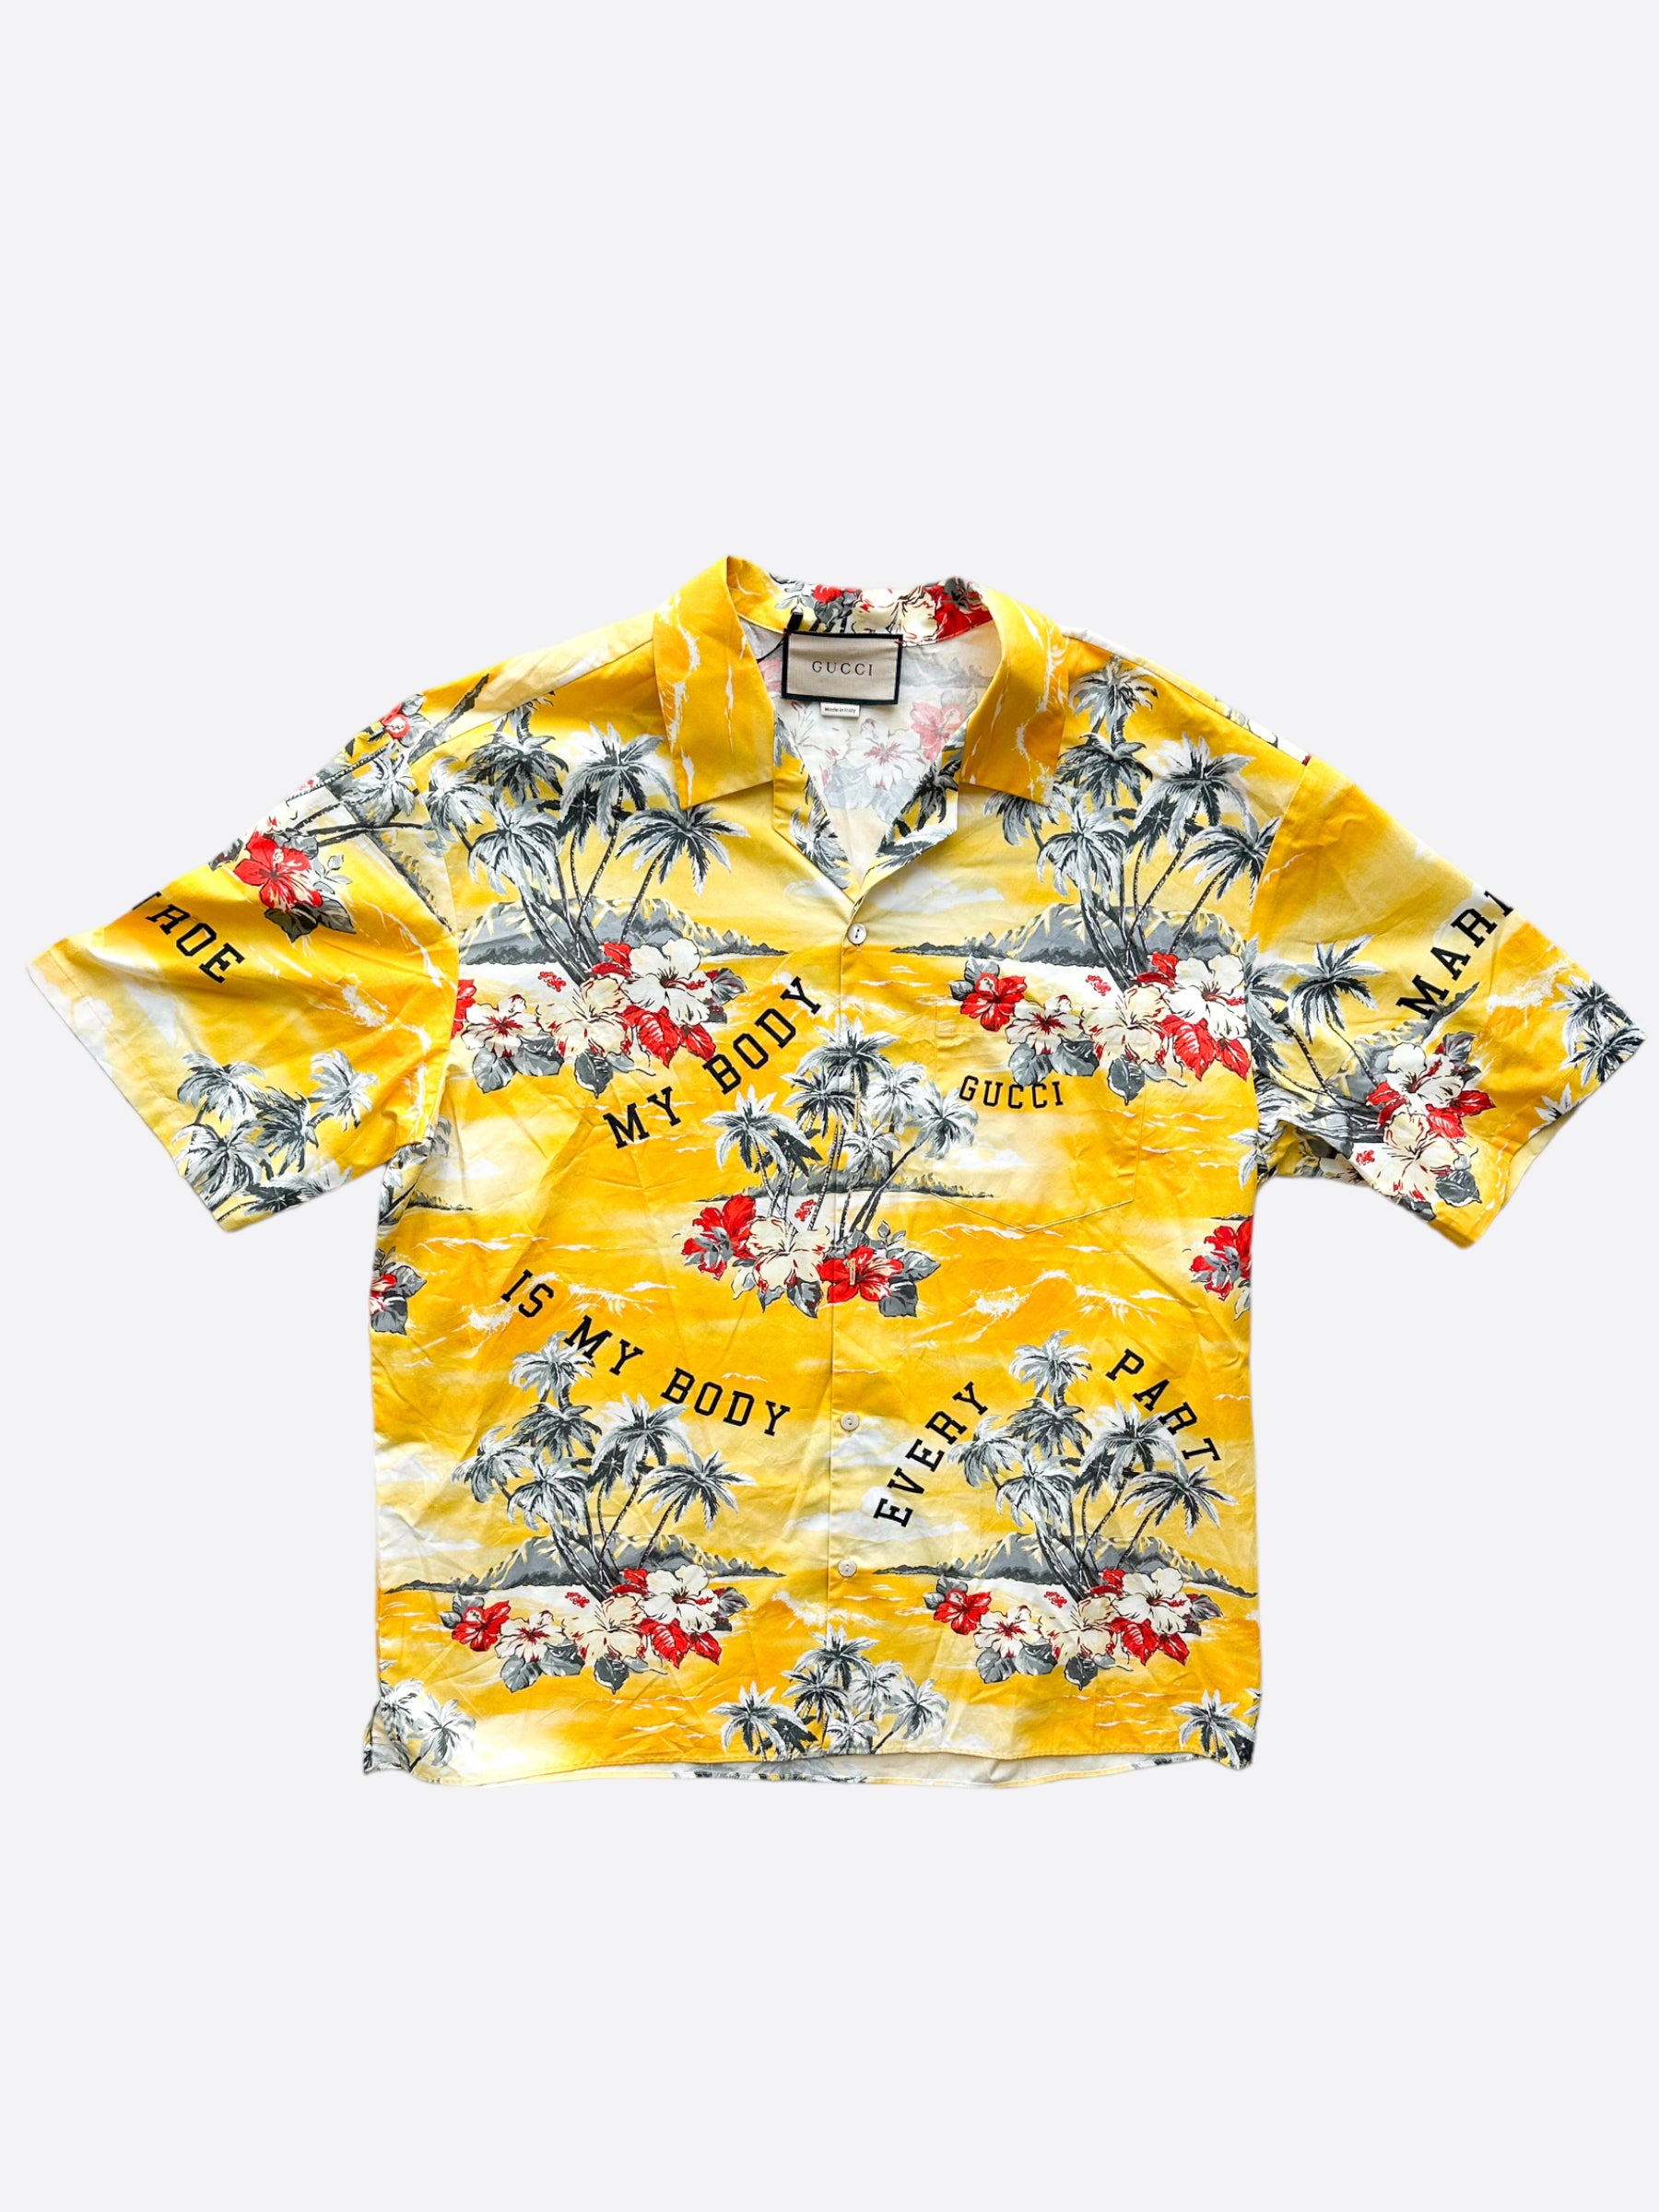 Gucci Bee Yellow Hawaiian Shirt And Short